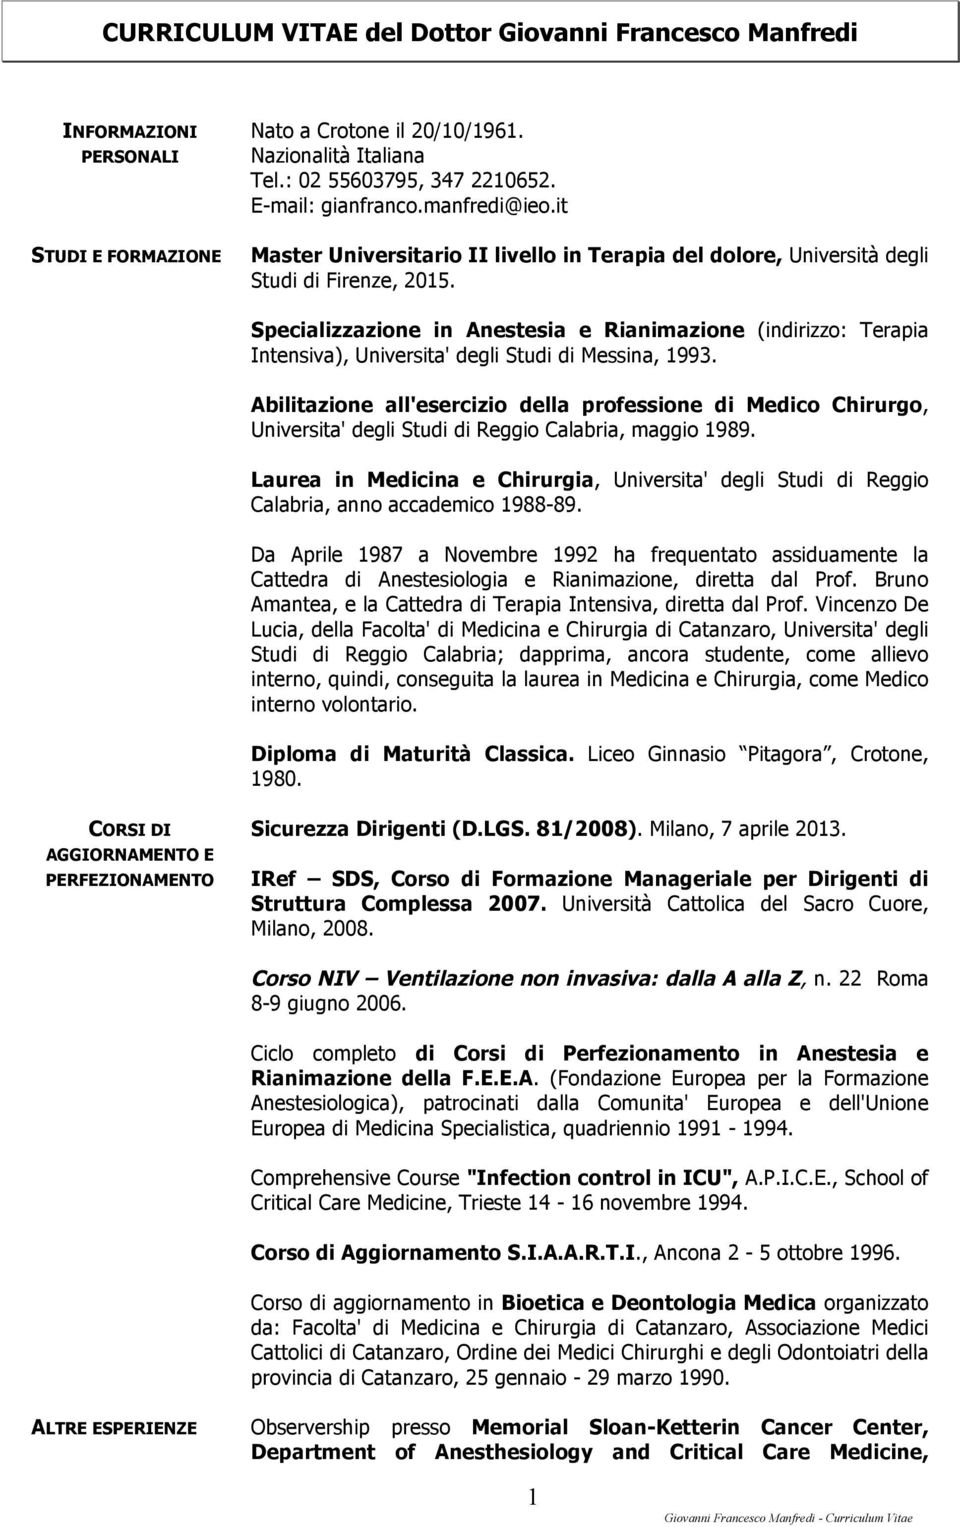 Specializzazione in Anestesia e Rianimazione (indirizzo: Terapia Intensiva), Universita' degli Studi di Messina, 1993.